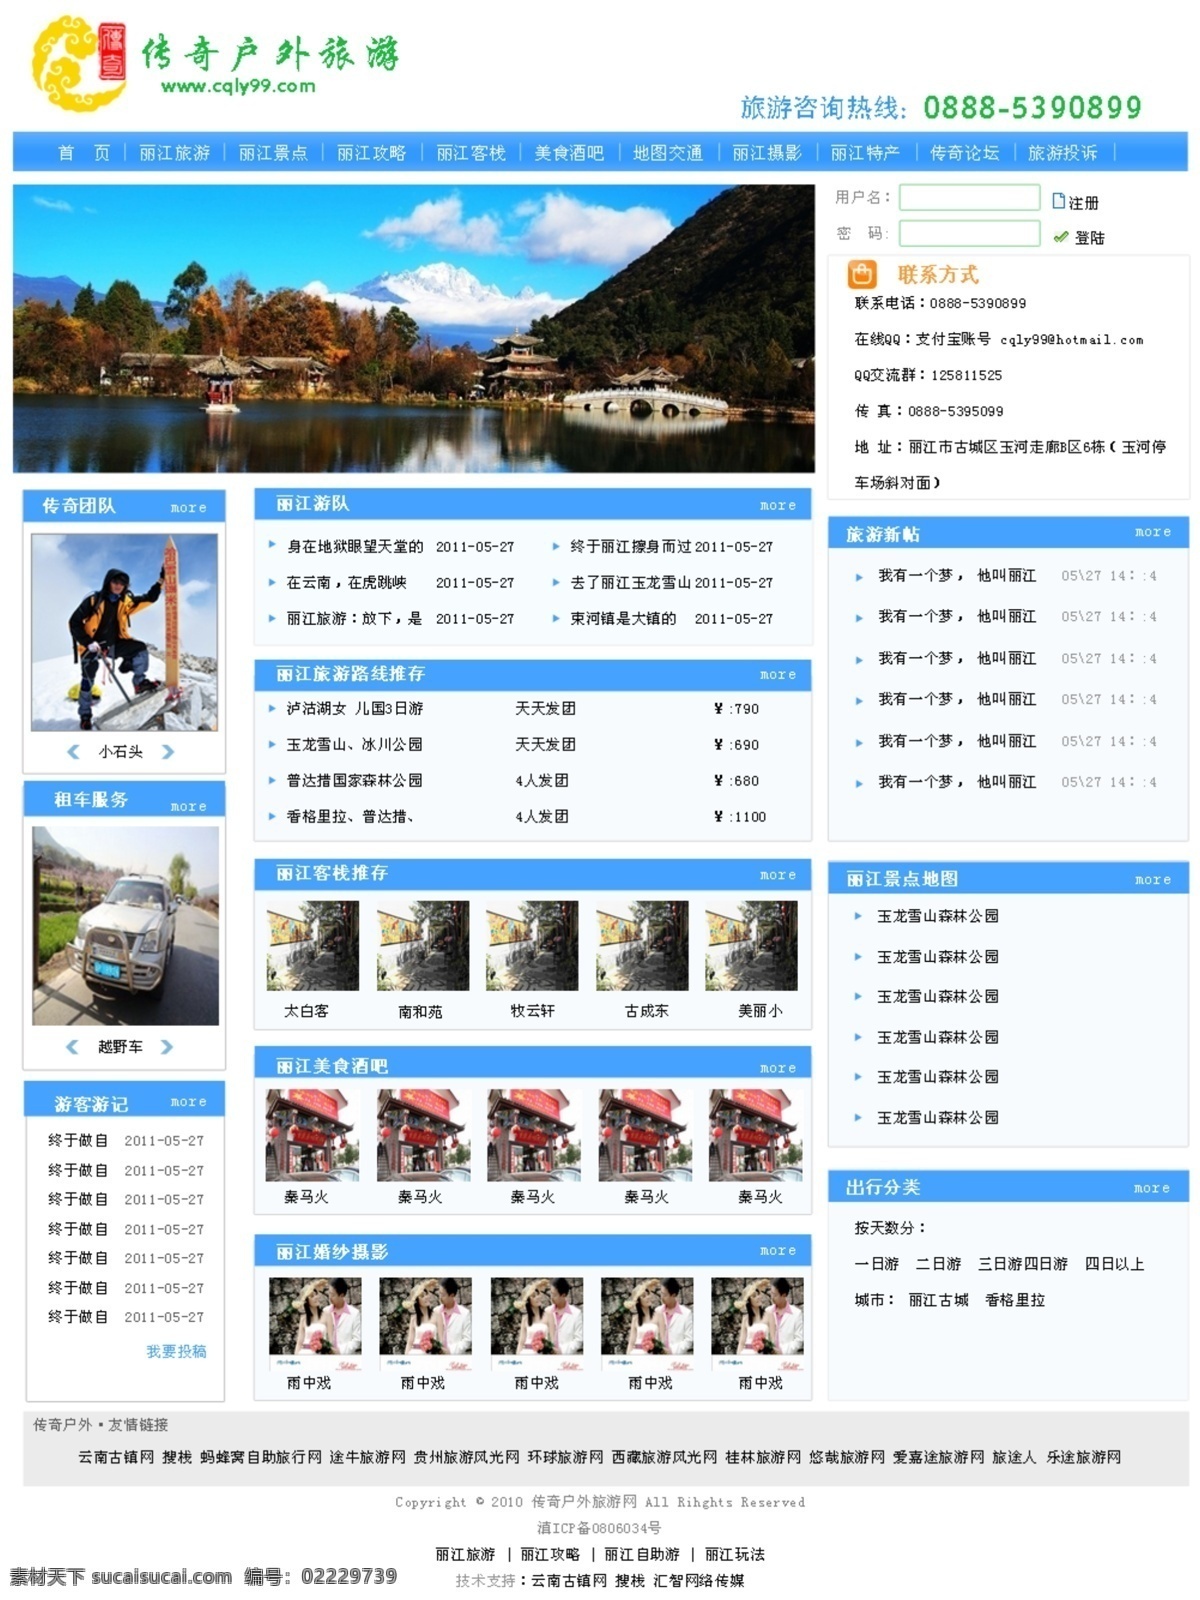 旅游 网页模板 蓝色调 旅游网页模板 模板 网页 源文件 中文模版 网页素材